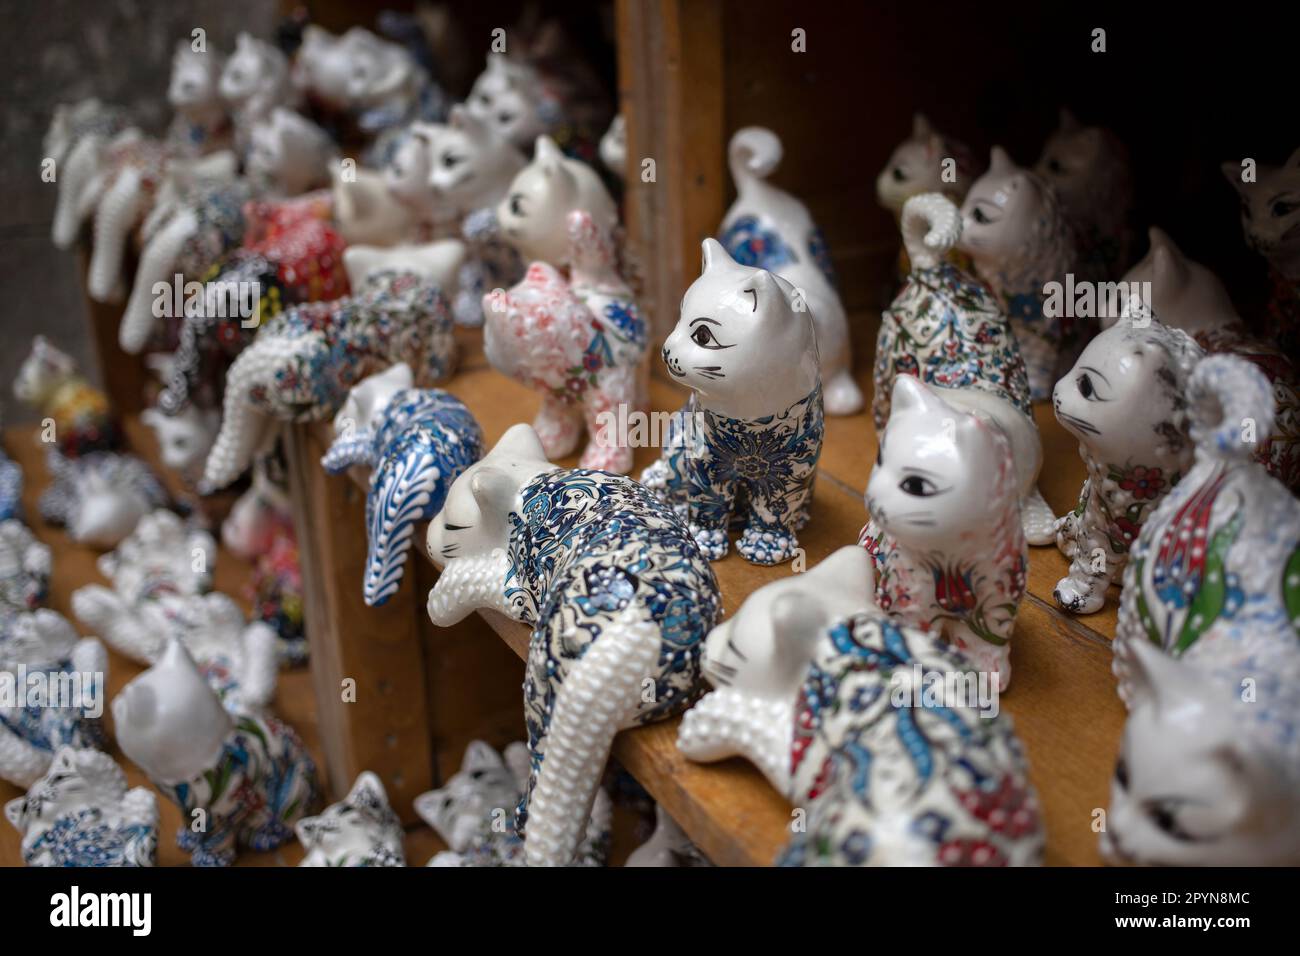 Kotor, Montenegro - un sacco di statuette di gatto in porcellana allineate su uno scaffale in un negozio di articoli da regalo Foto Stock